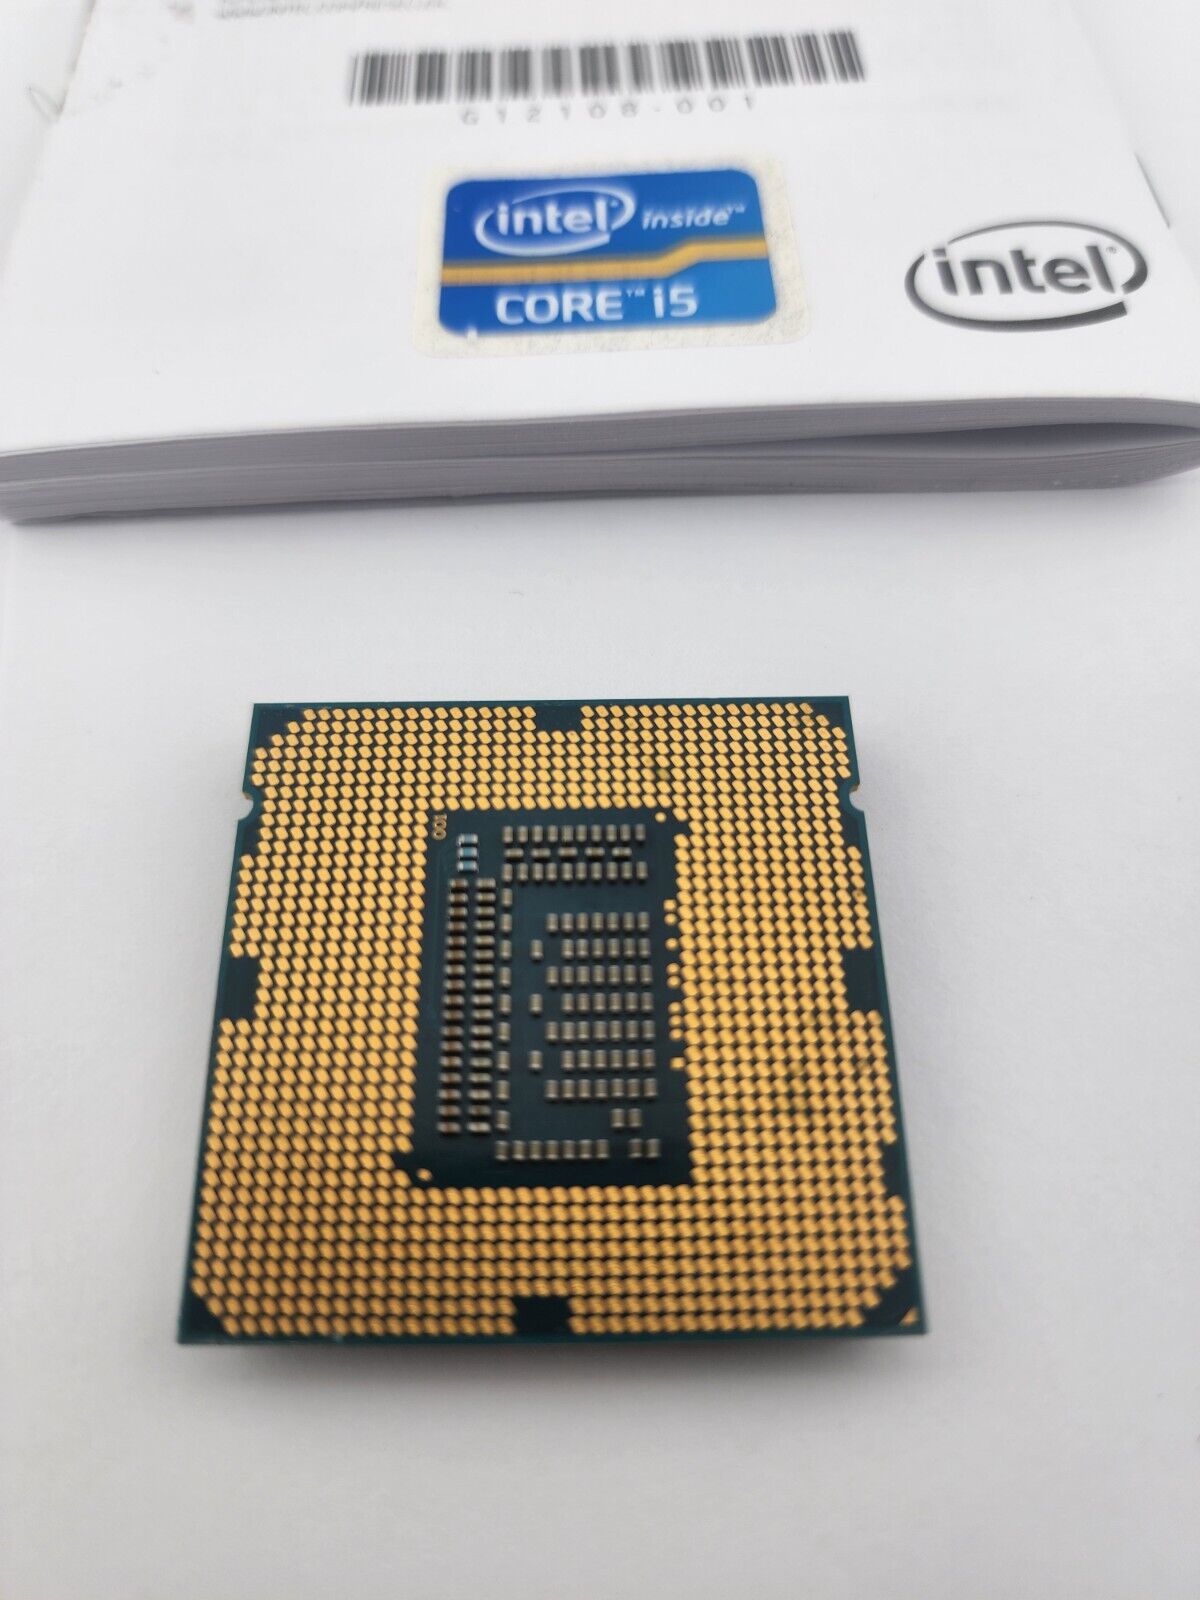 Intel Core i5-3570 3.4 GHz LGA 1155 5 GT/s Desktop CPU Processor SR0T7